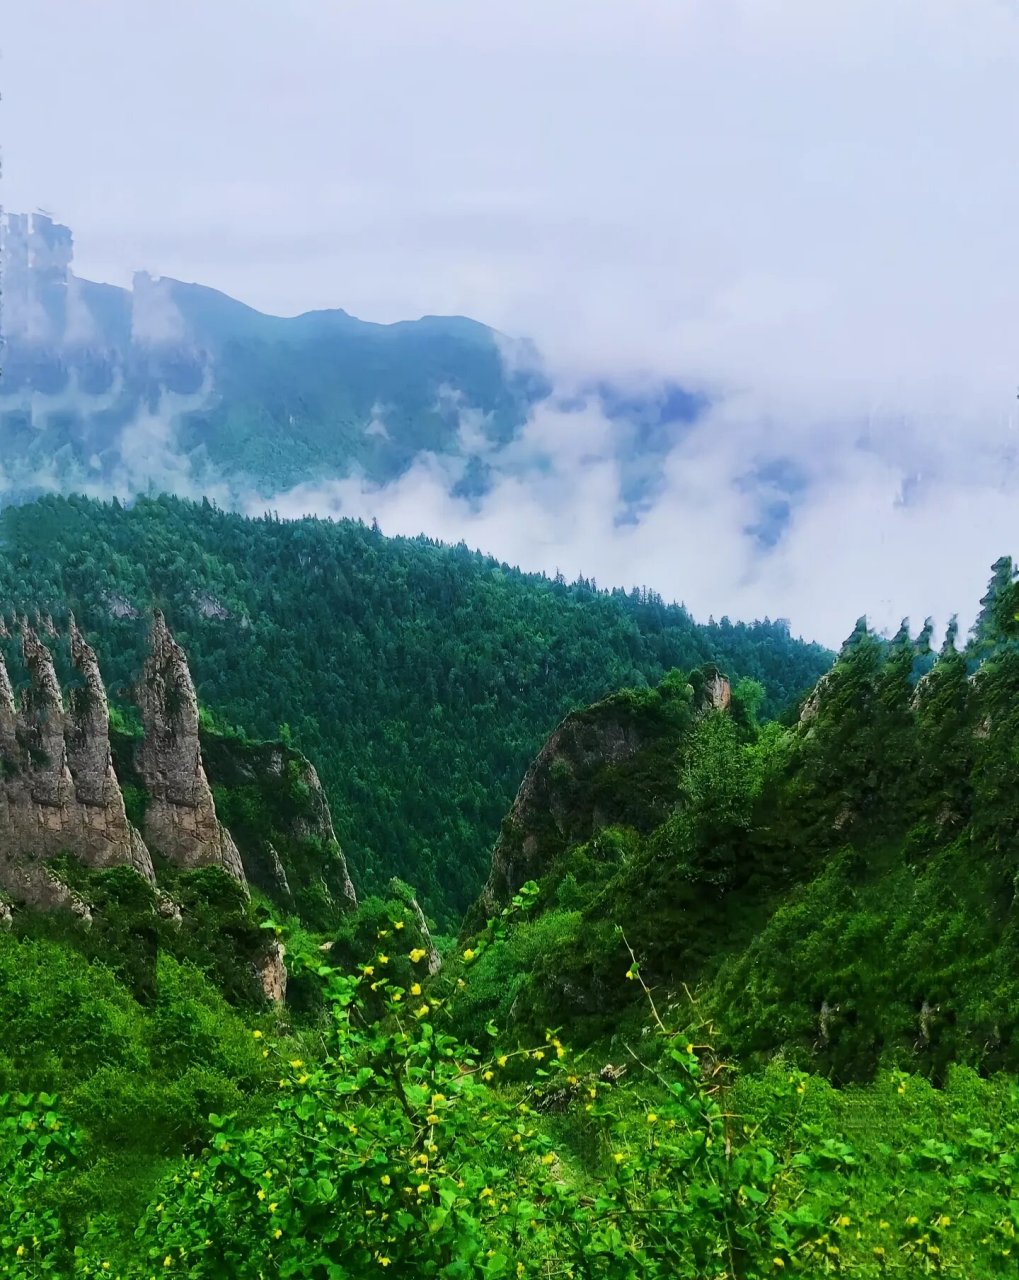 莲花山国家森林公园 莲花山国家森林公园位于甘肃南部,坐落在临潭县